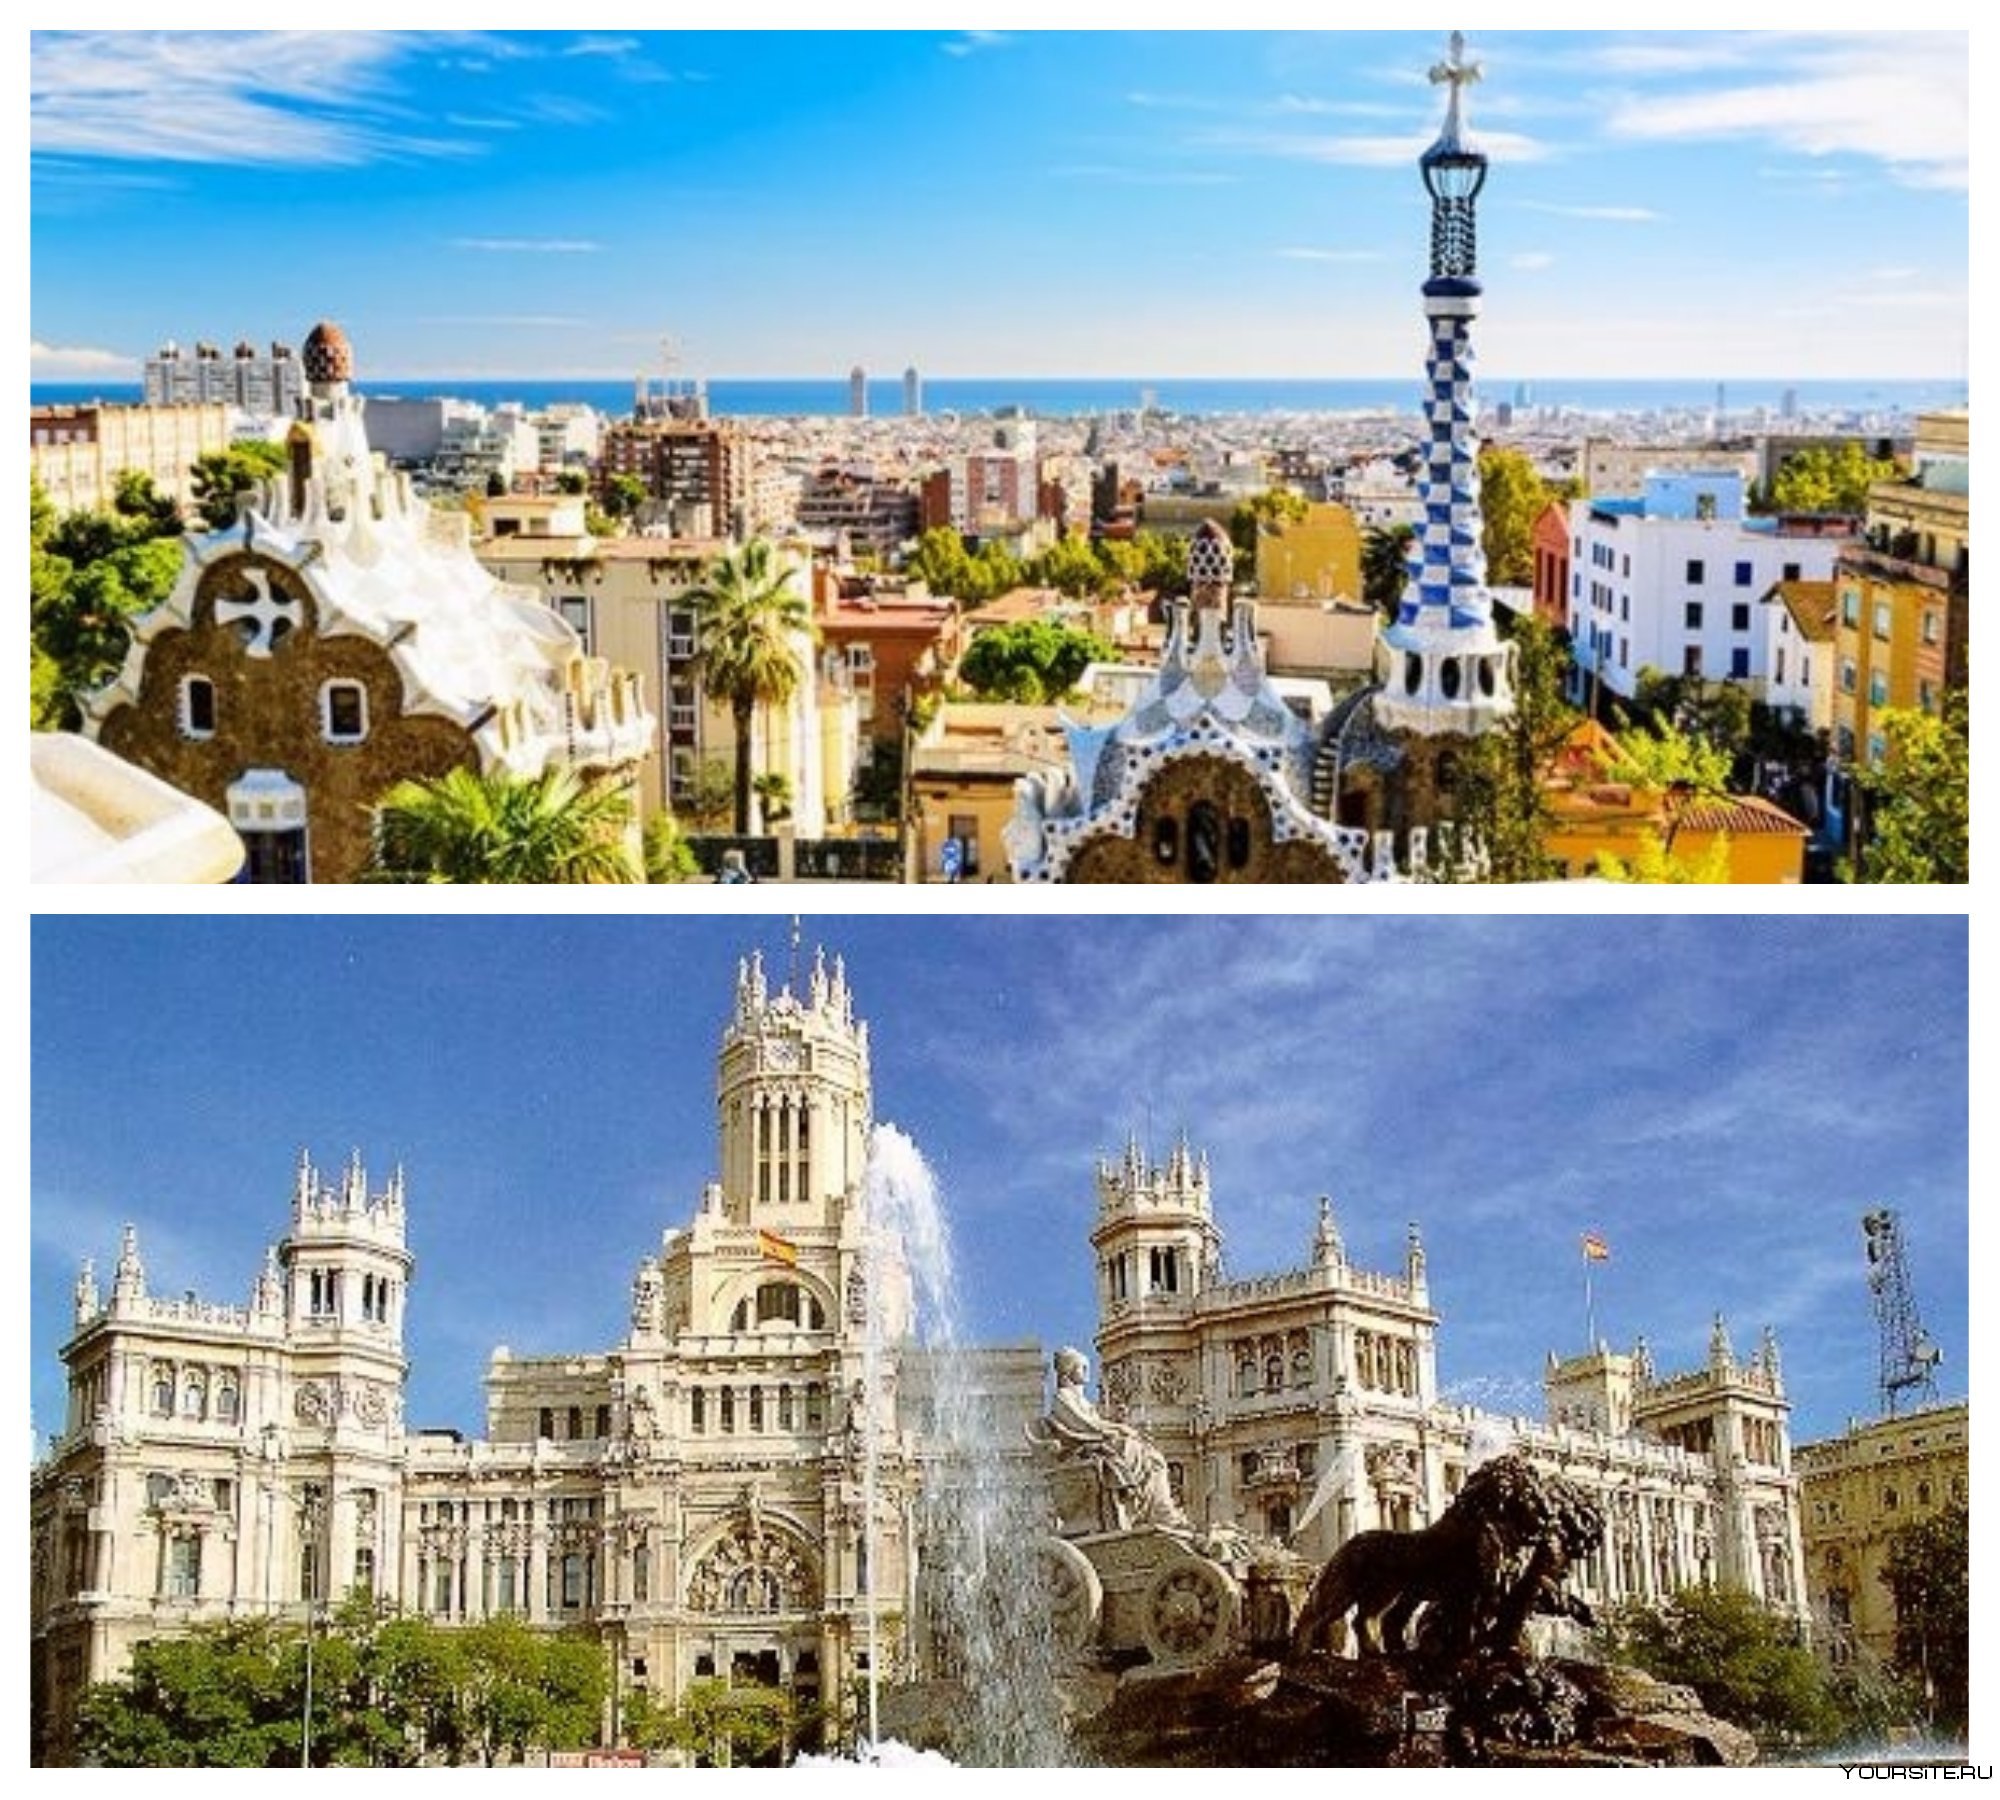 Испания города для жизни. Королевство Испания Мадрид. Королевство Испания Барселона. Столица Испании Мадрид или Барселона. Барселона город в Испании достопримечательности.